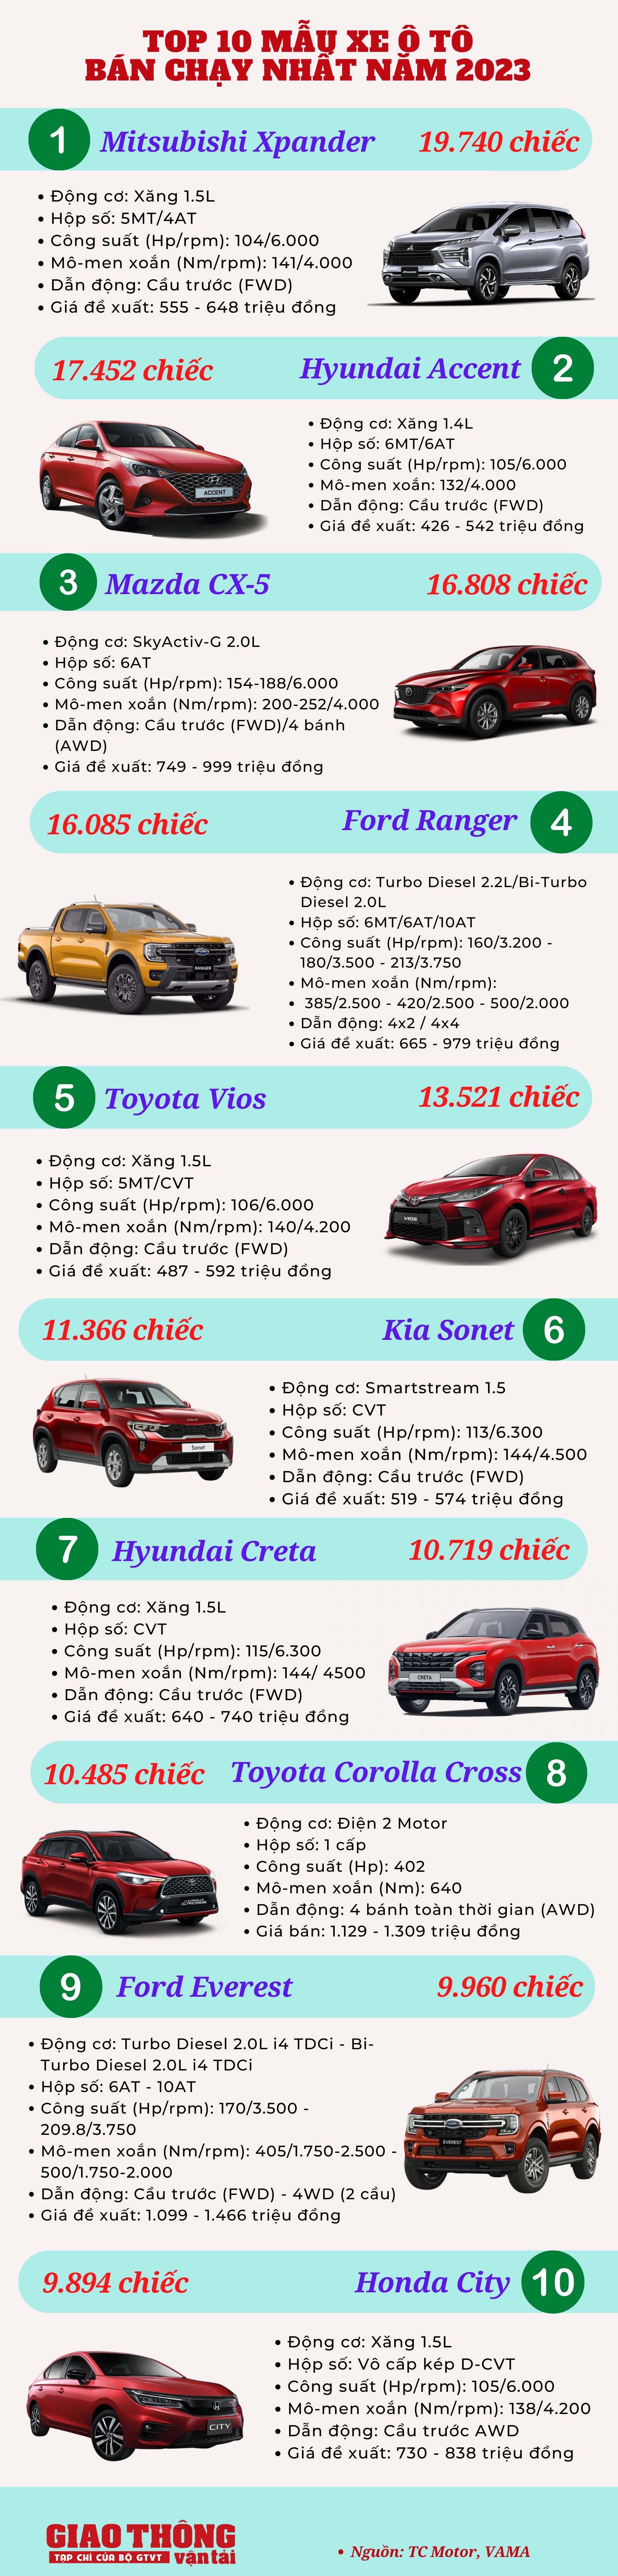 Top 10 ô tô đắt khách nhất Việt Nam năm 2023